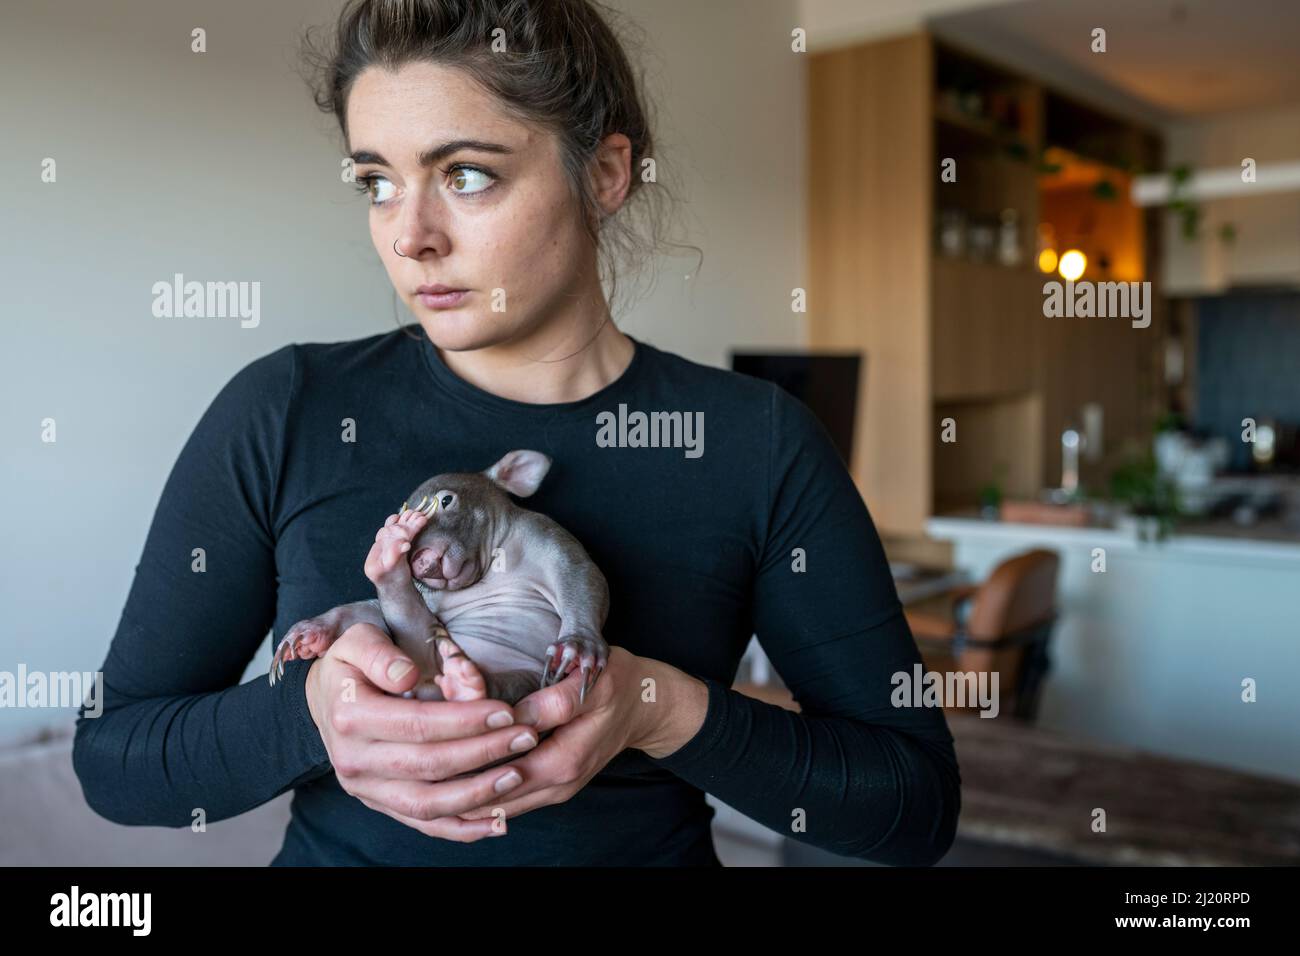 Emily Small, fondatrice de Goongerah Wombat Orphanage, dans son appartement, tenant 'Landon' un homme à nez nu (Vombatus ursinus), âgé de 6 mois. Échéance Banque D'Images